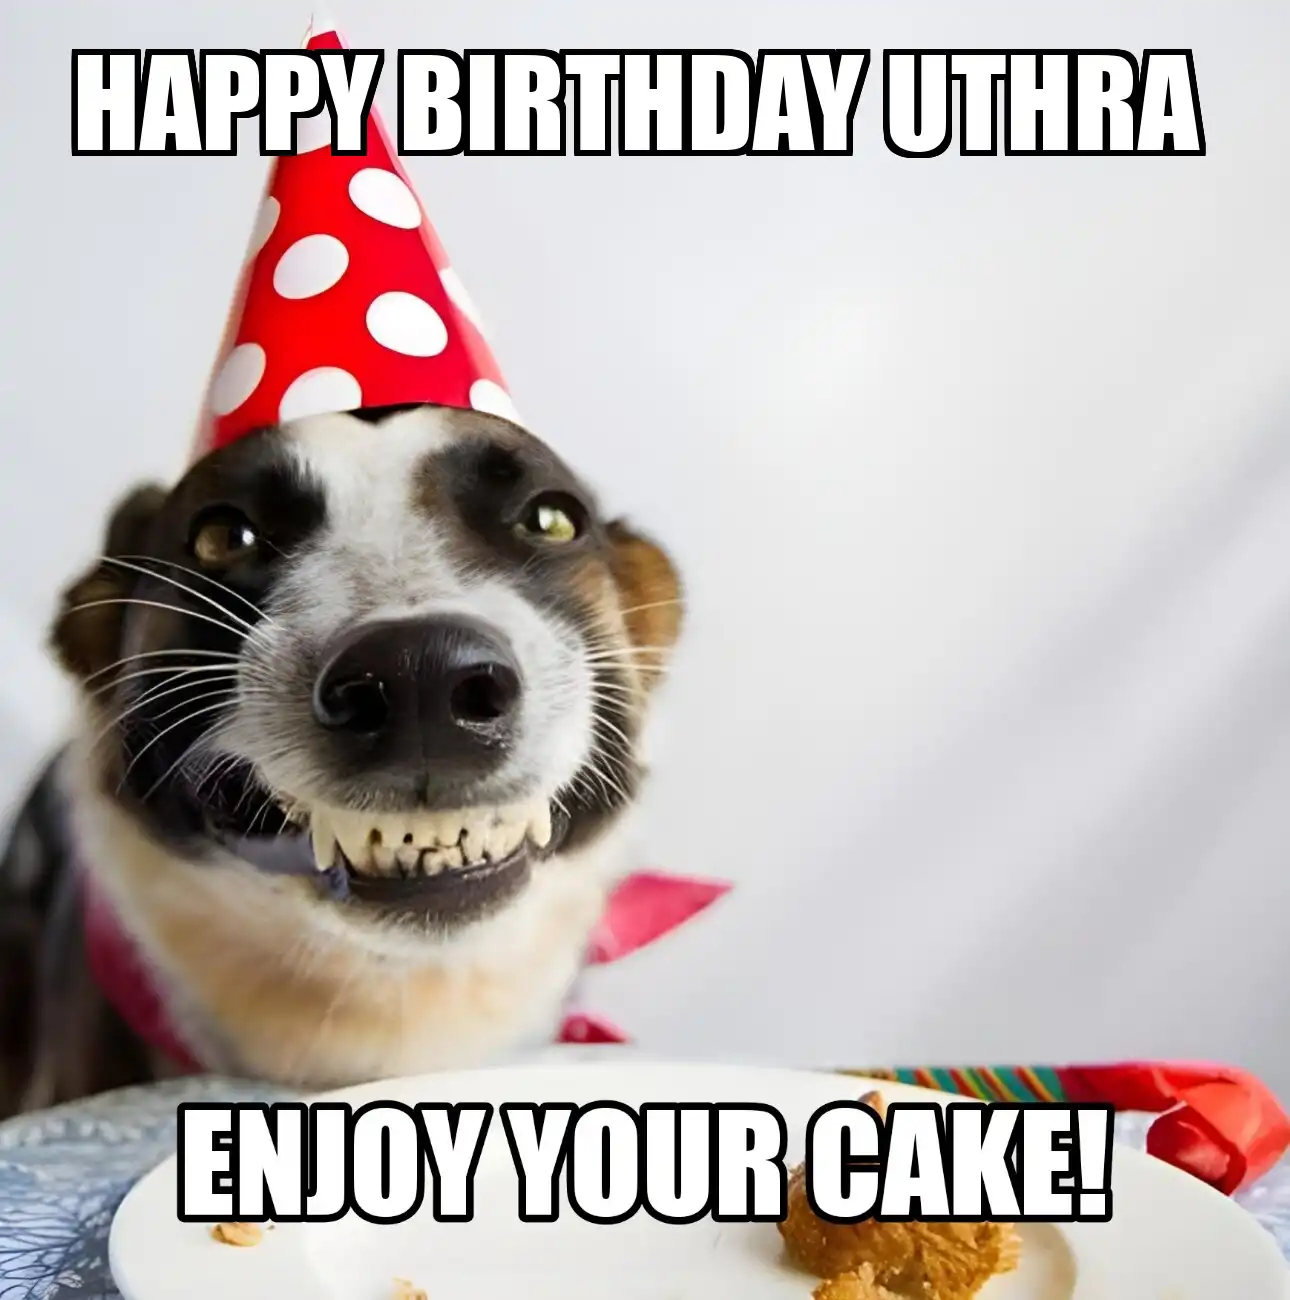 Happy Birthday Uthra Enjoy Your Cake Dog Meme